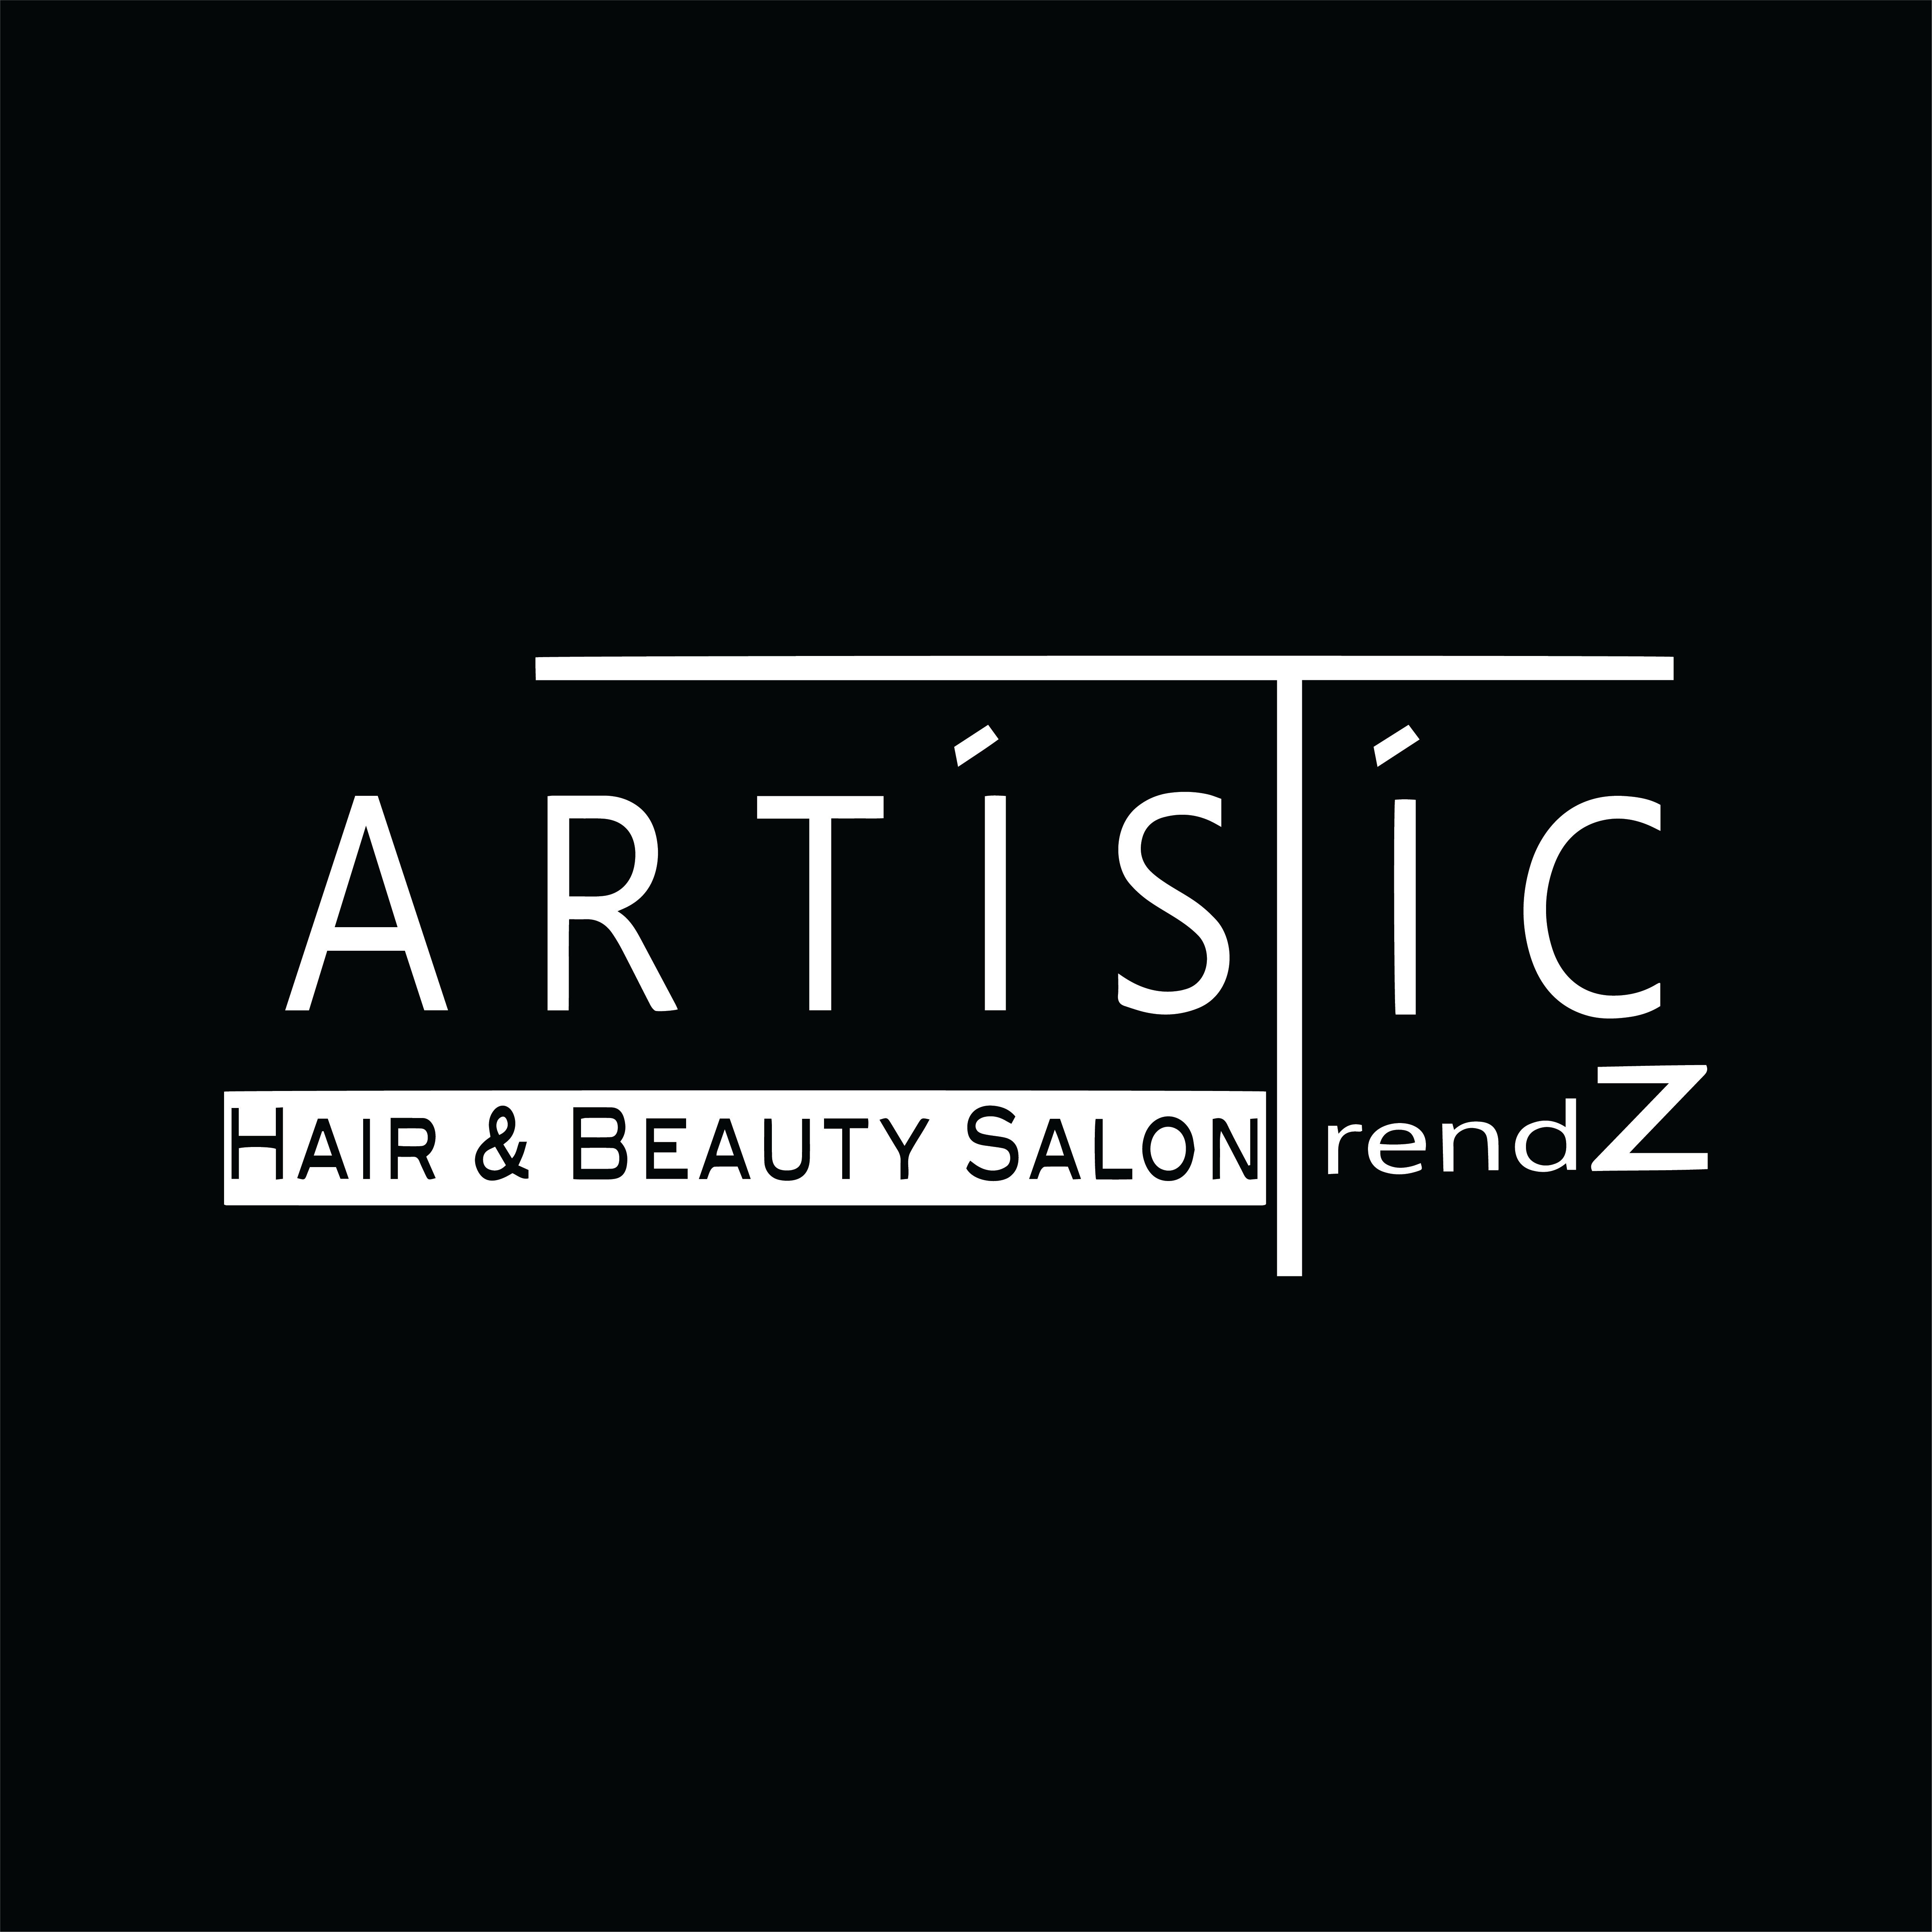 Artistic Trendz Beauty Salon & Store - Kozmetika, Smink, Fodrászat, Kézápolás, Lábápolás, Wax hölgyek, Testkezelés